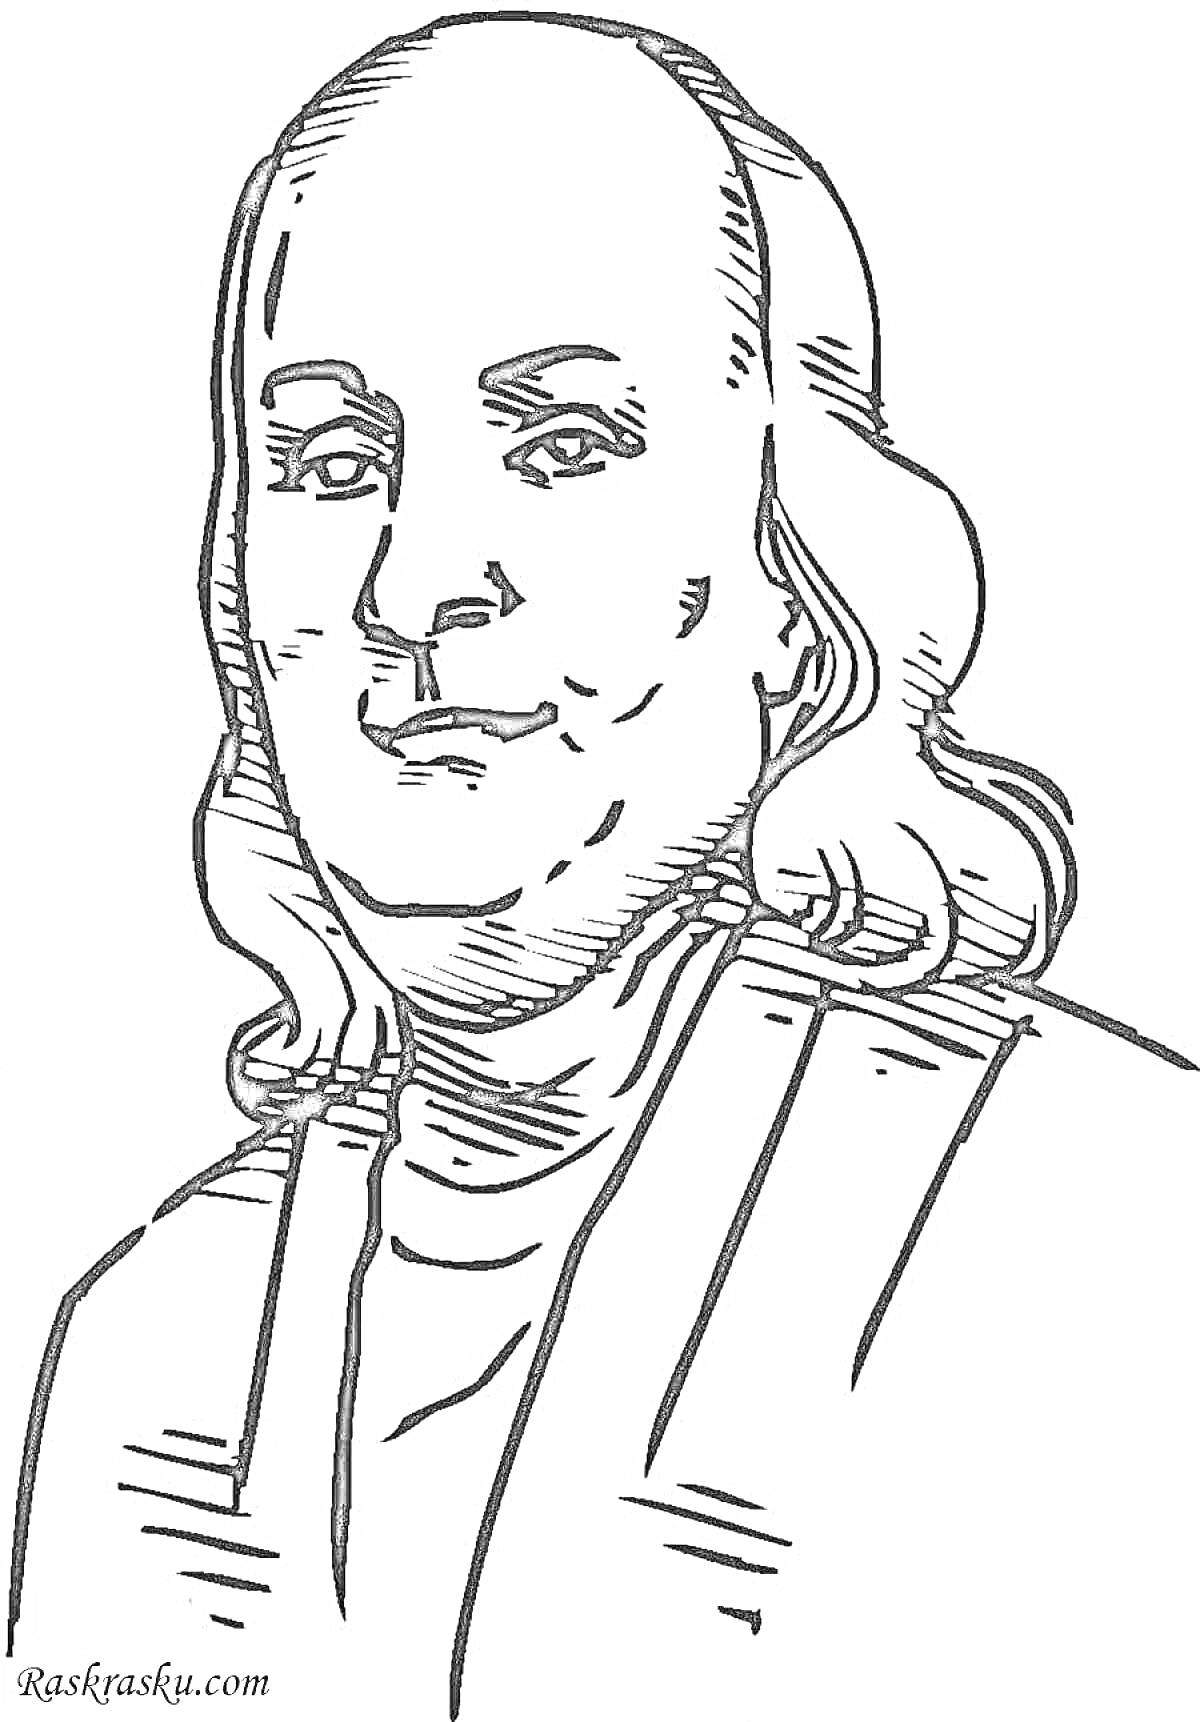 Раскраска Портрет человека с длинными волосами и мантией